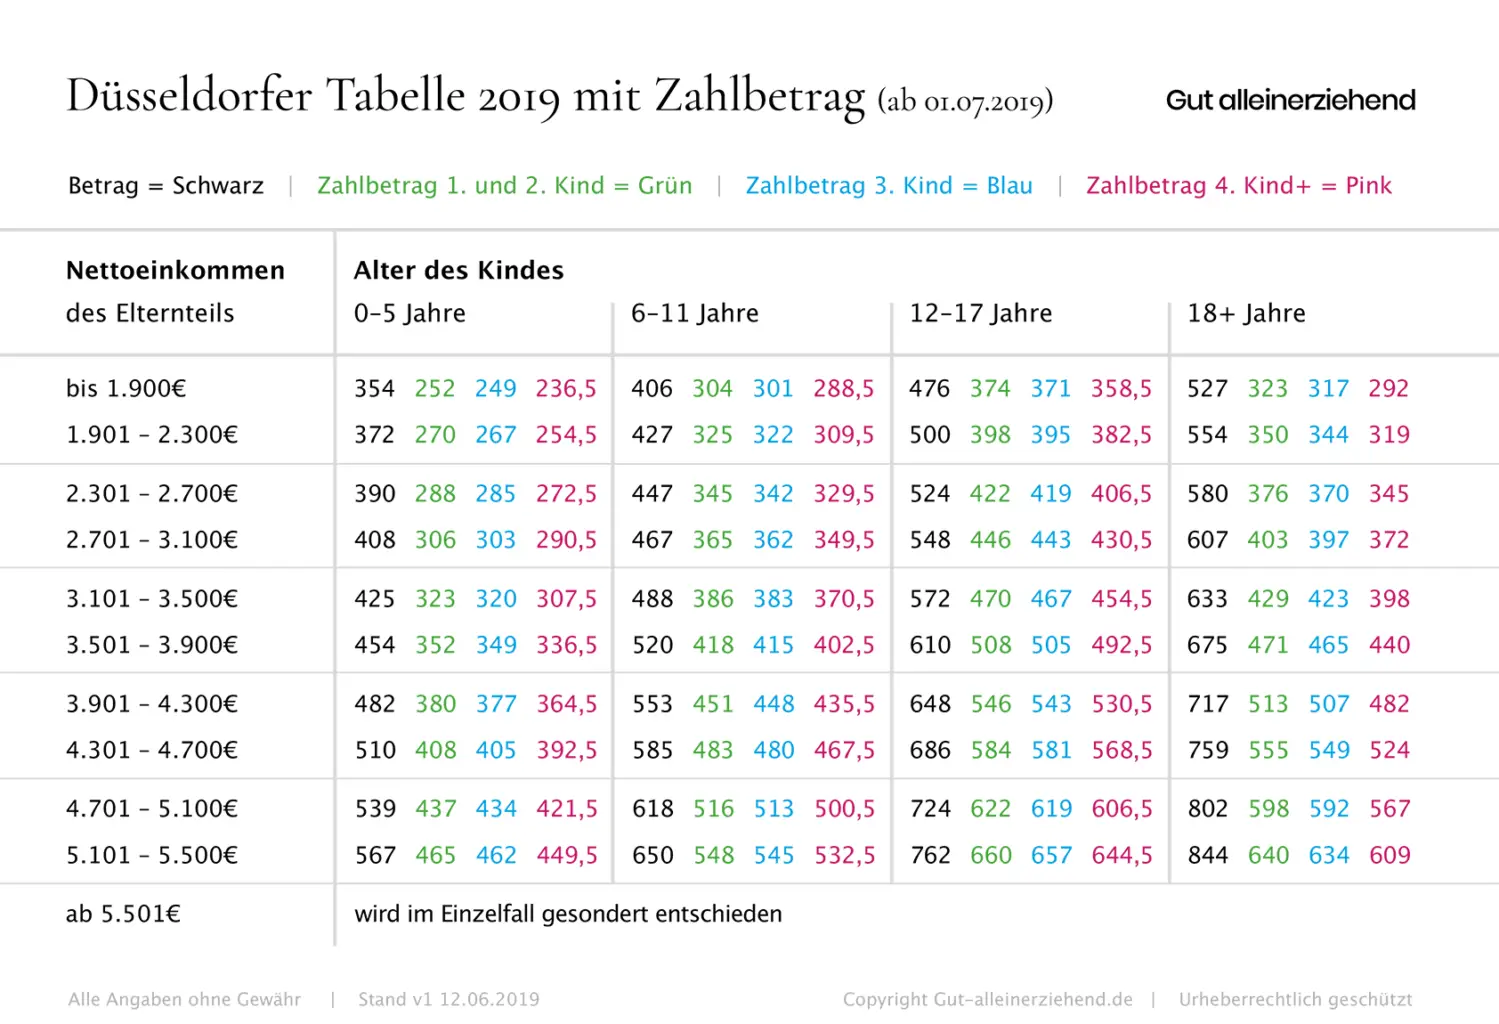 Düsseldorfer Tabelle mit Zahlbetrag ab Juli 2019